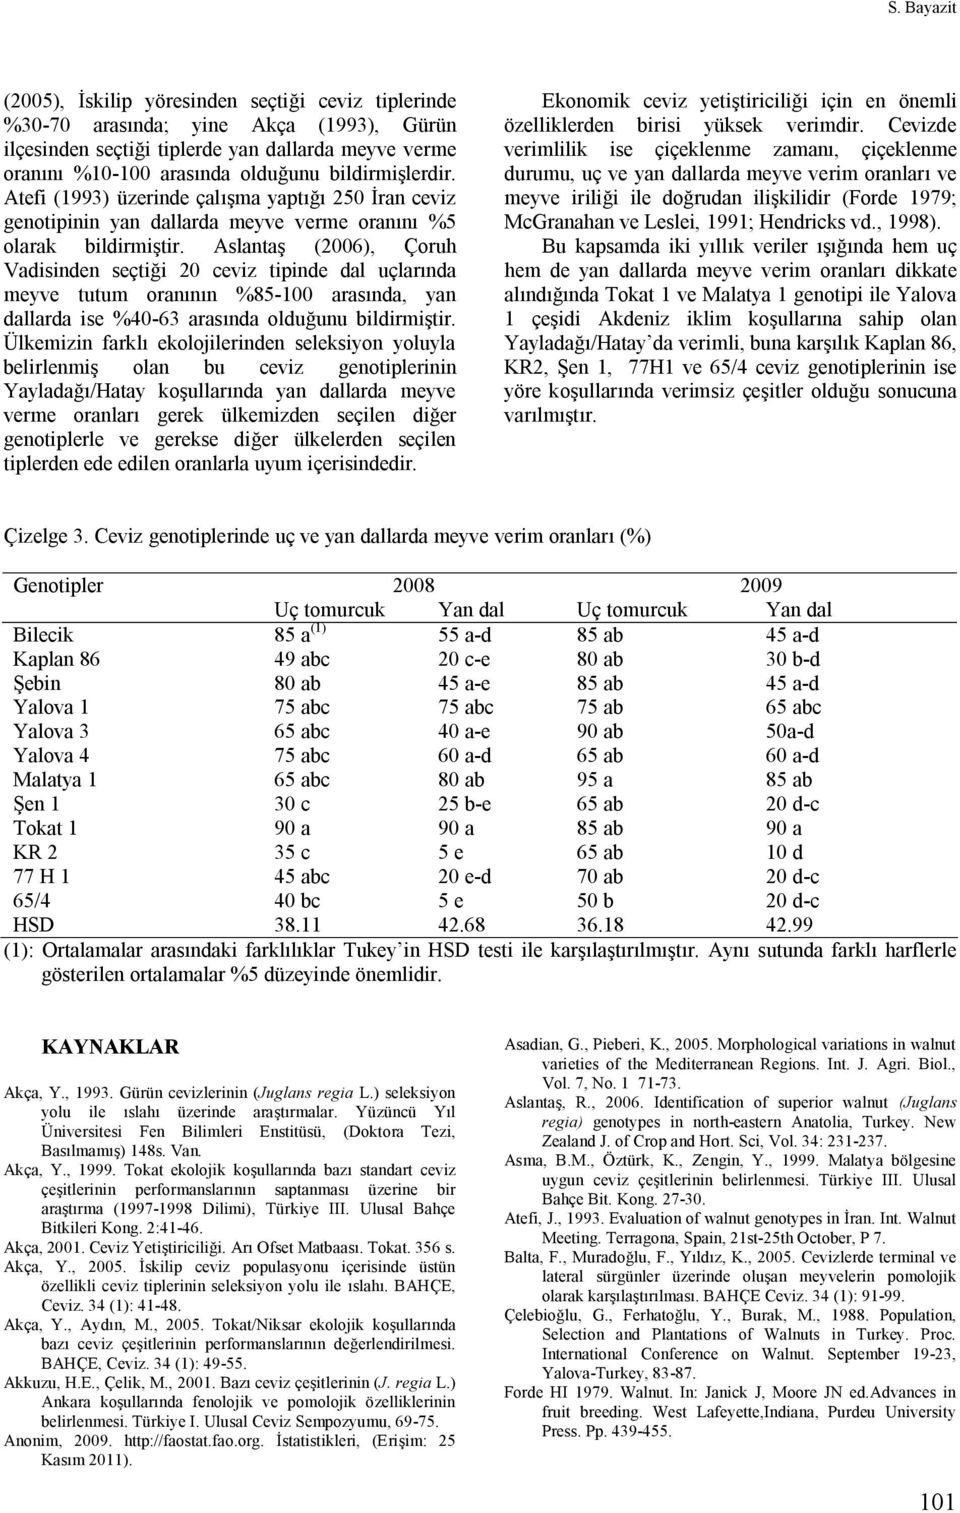 Aslantaş (2006), Çoruh Vadisinden seçtiği 20 ceviz tipinde dal uçlarında meyve tutum oranının %85-100 arasında, yan dallarda ise %40-63 arasında olduğunu bildirmiştir.